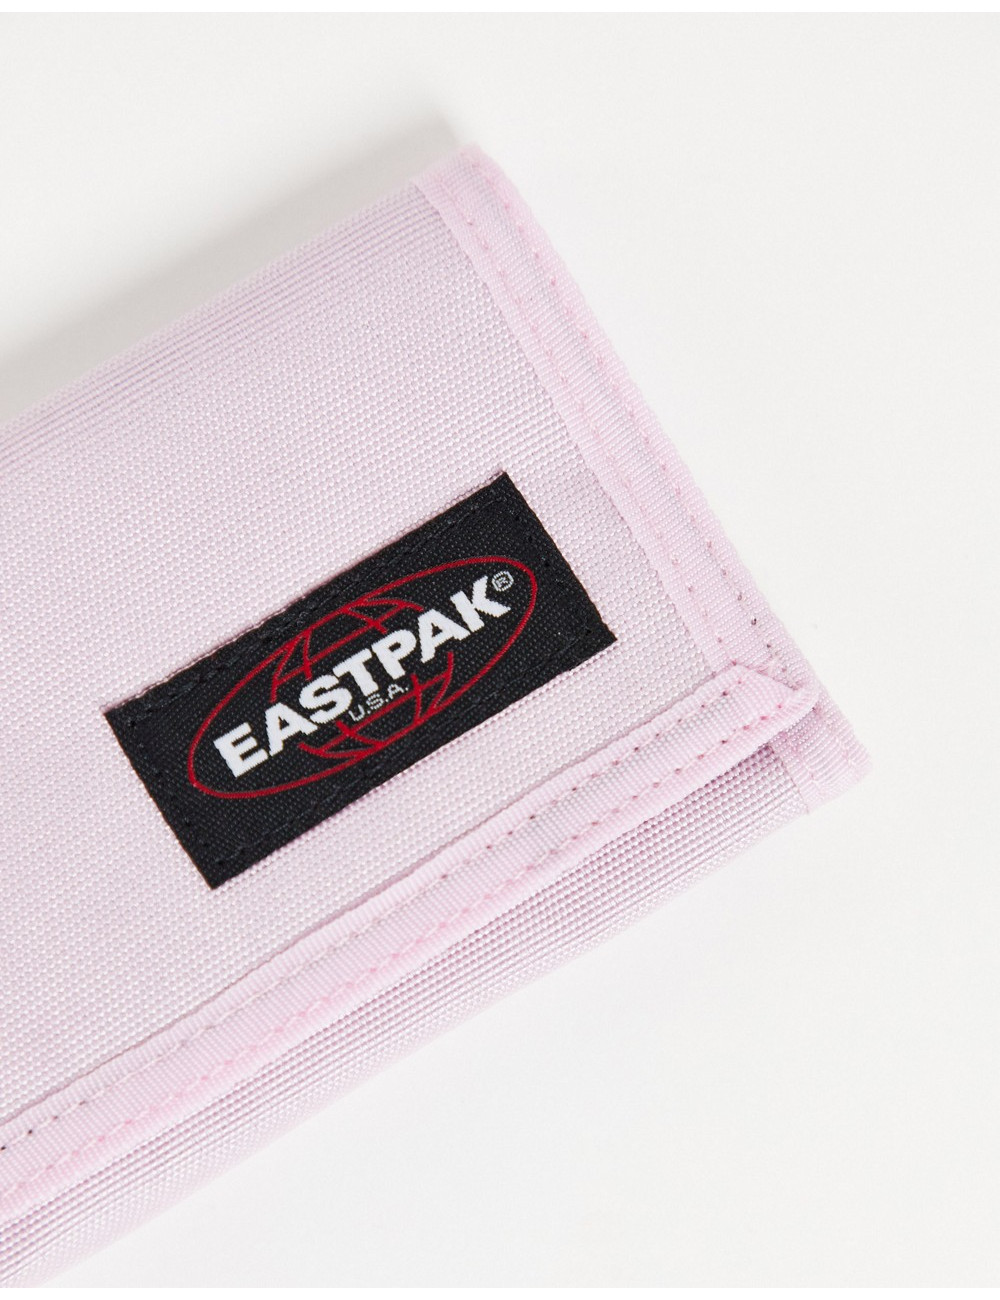 Eastpak crew single purse...